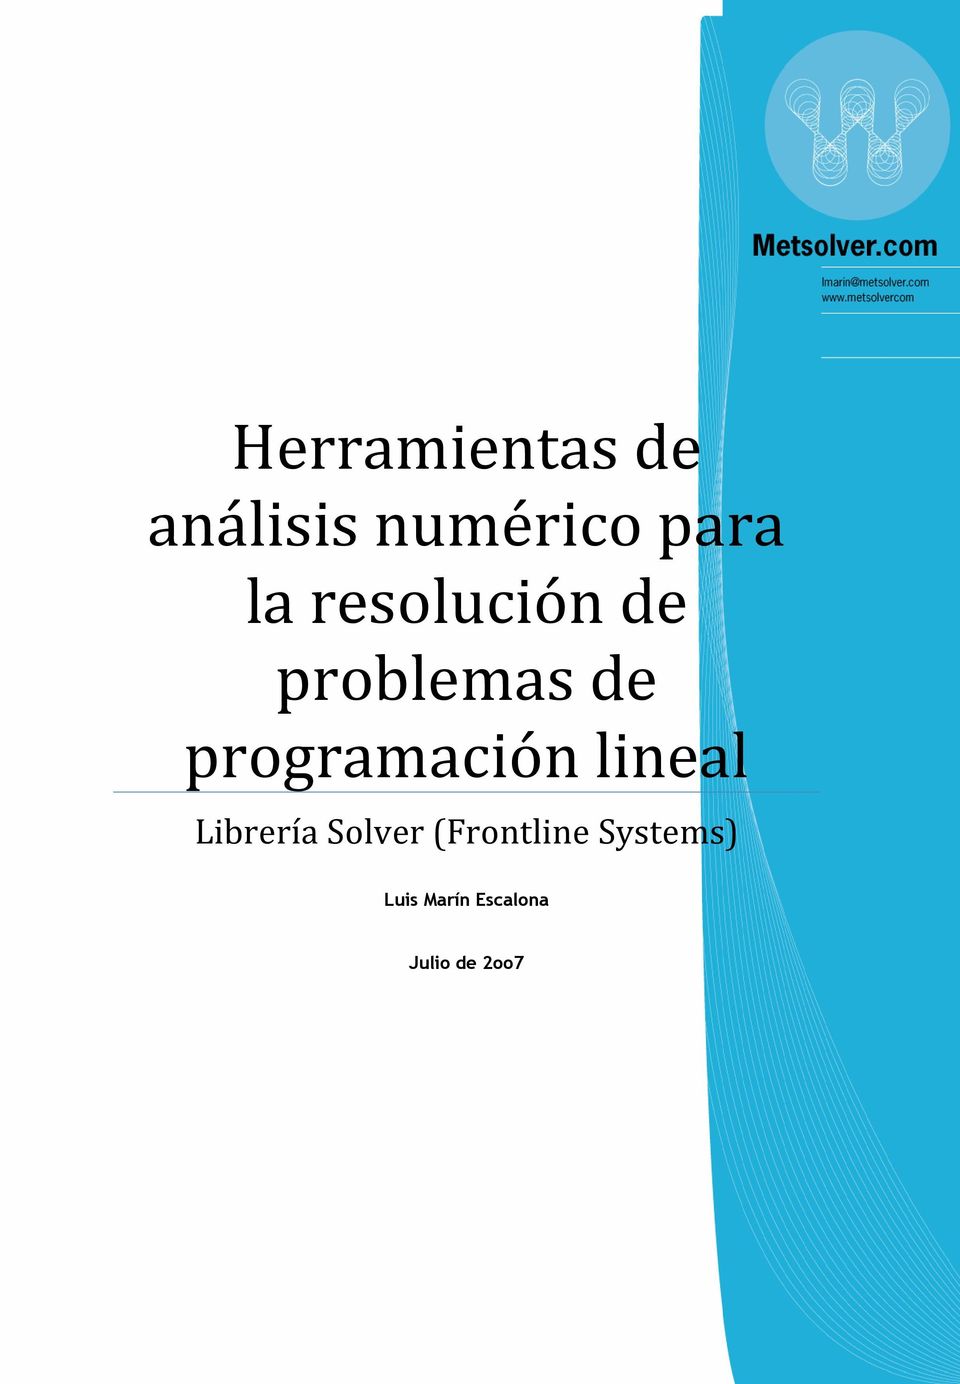 programación lineal Librería Solver